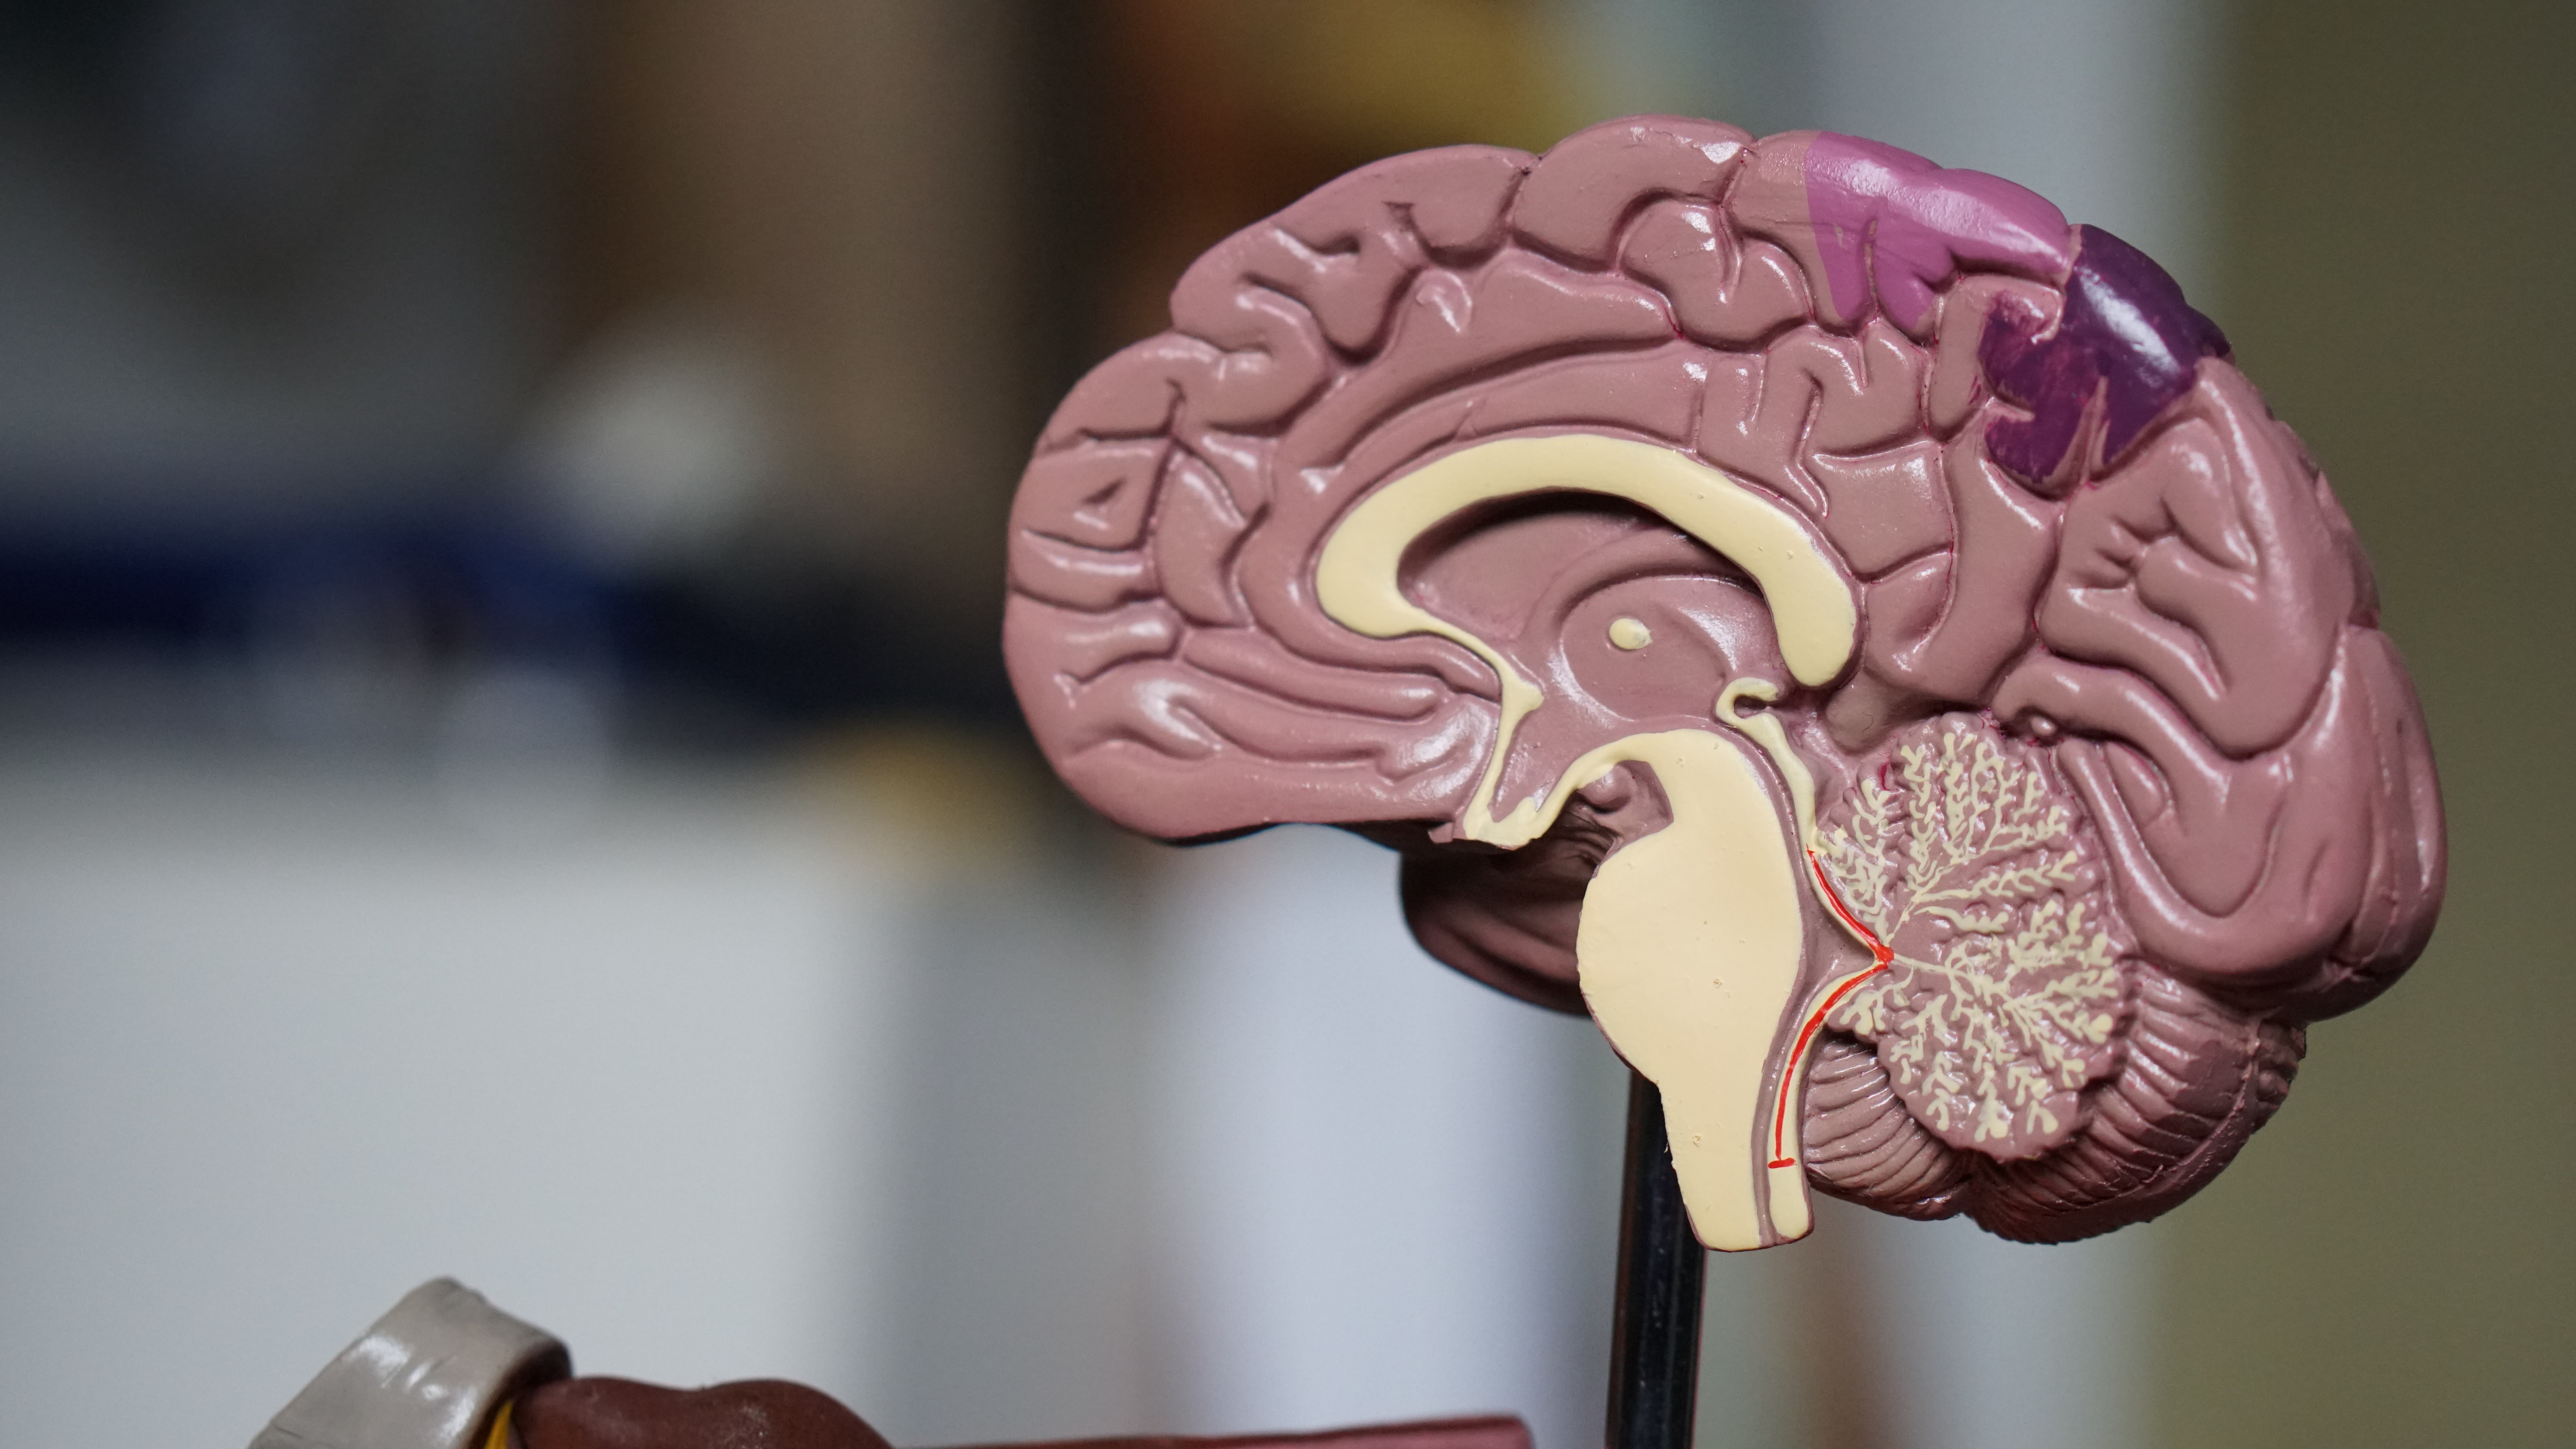 Modelo anatómico de un cerebro